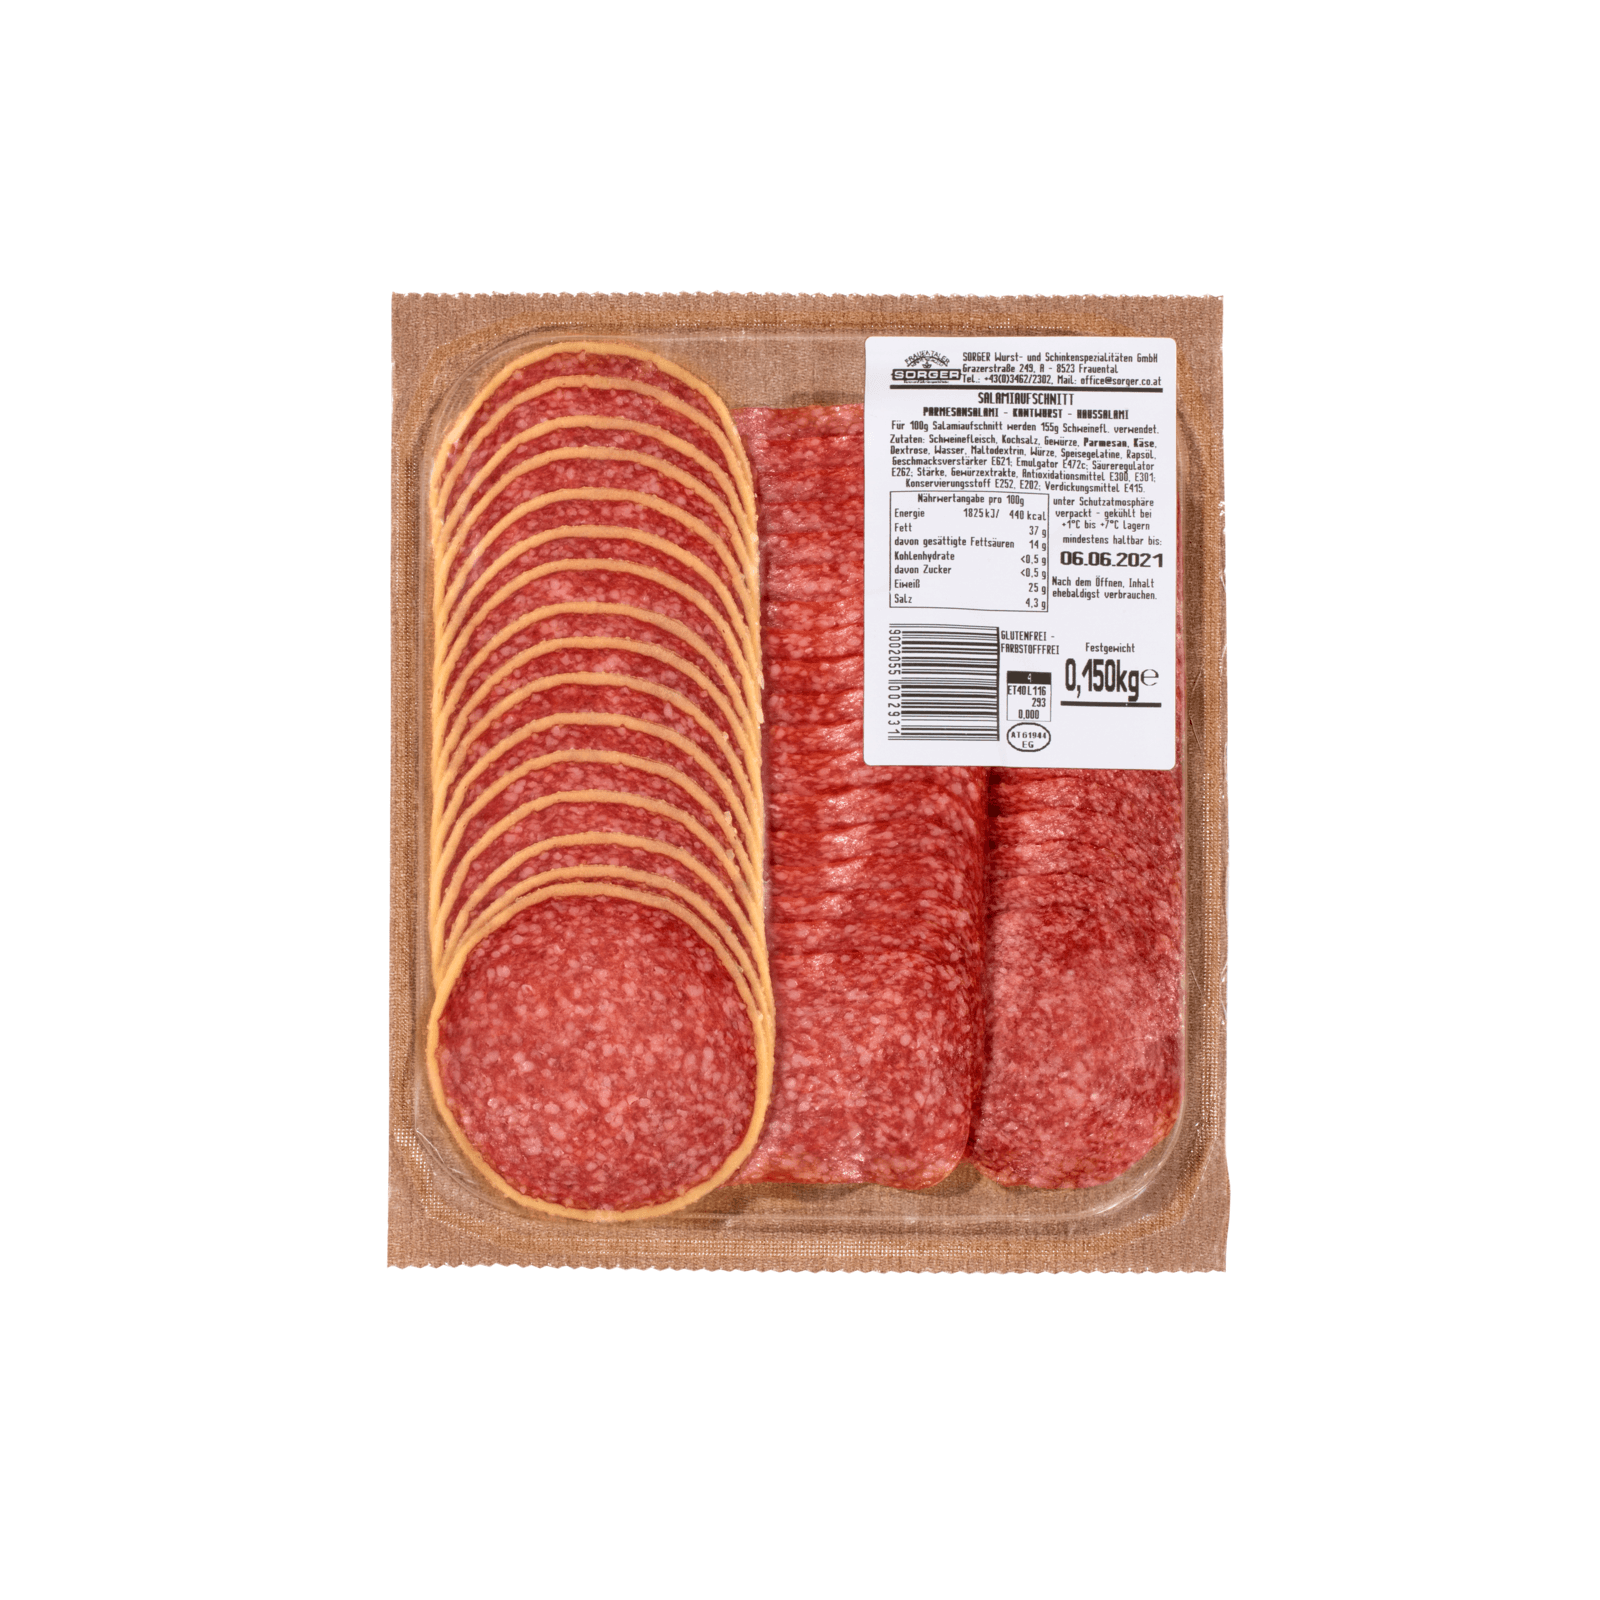 Salami & Paprikawurst online kaufen - REWE.de - Seite 5